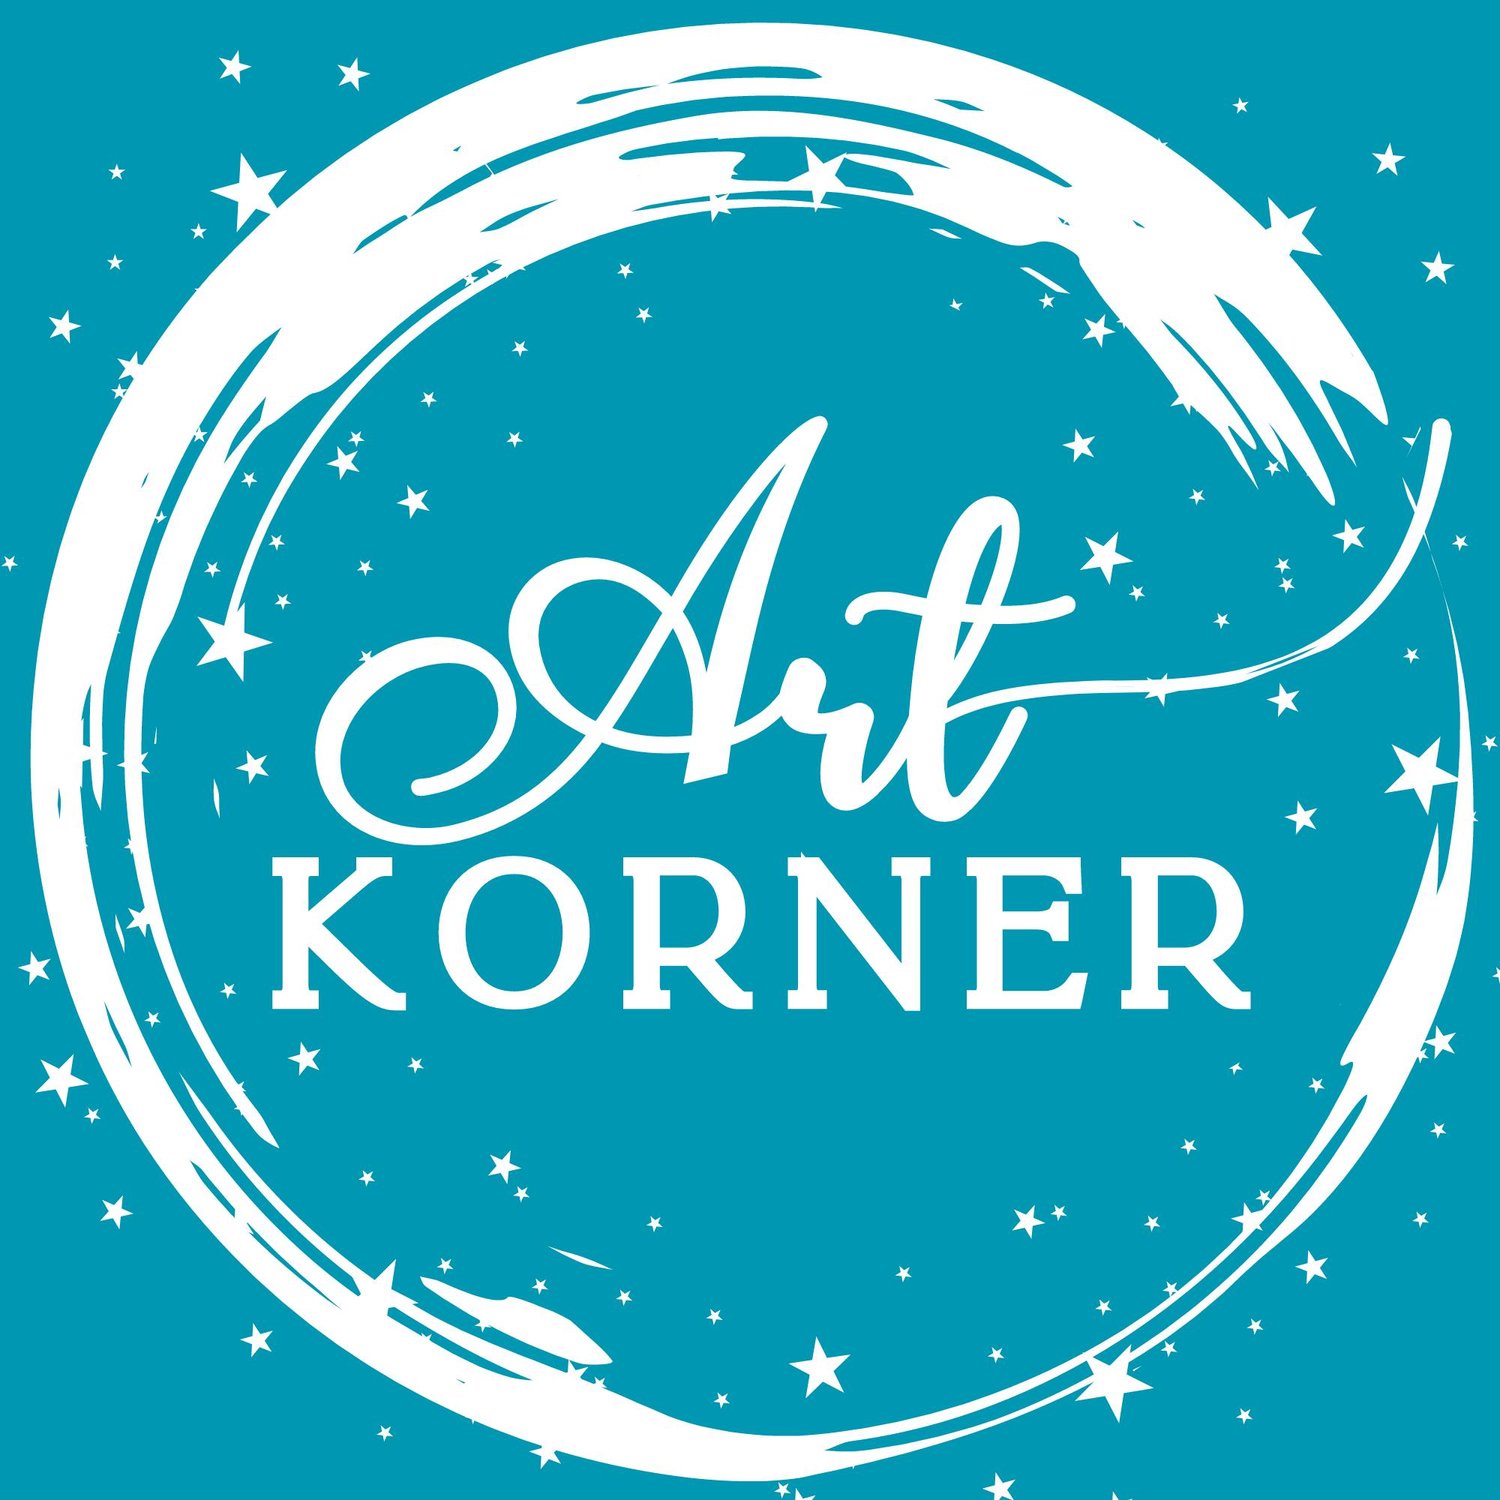 The Art Korner